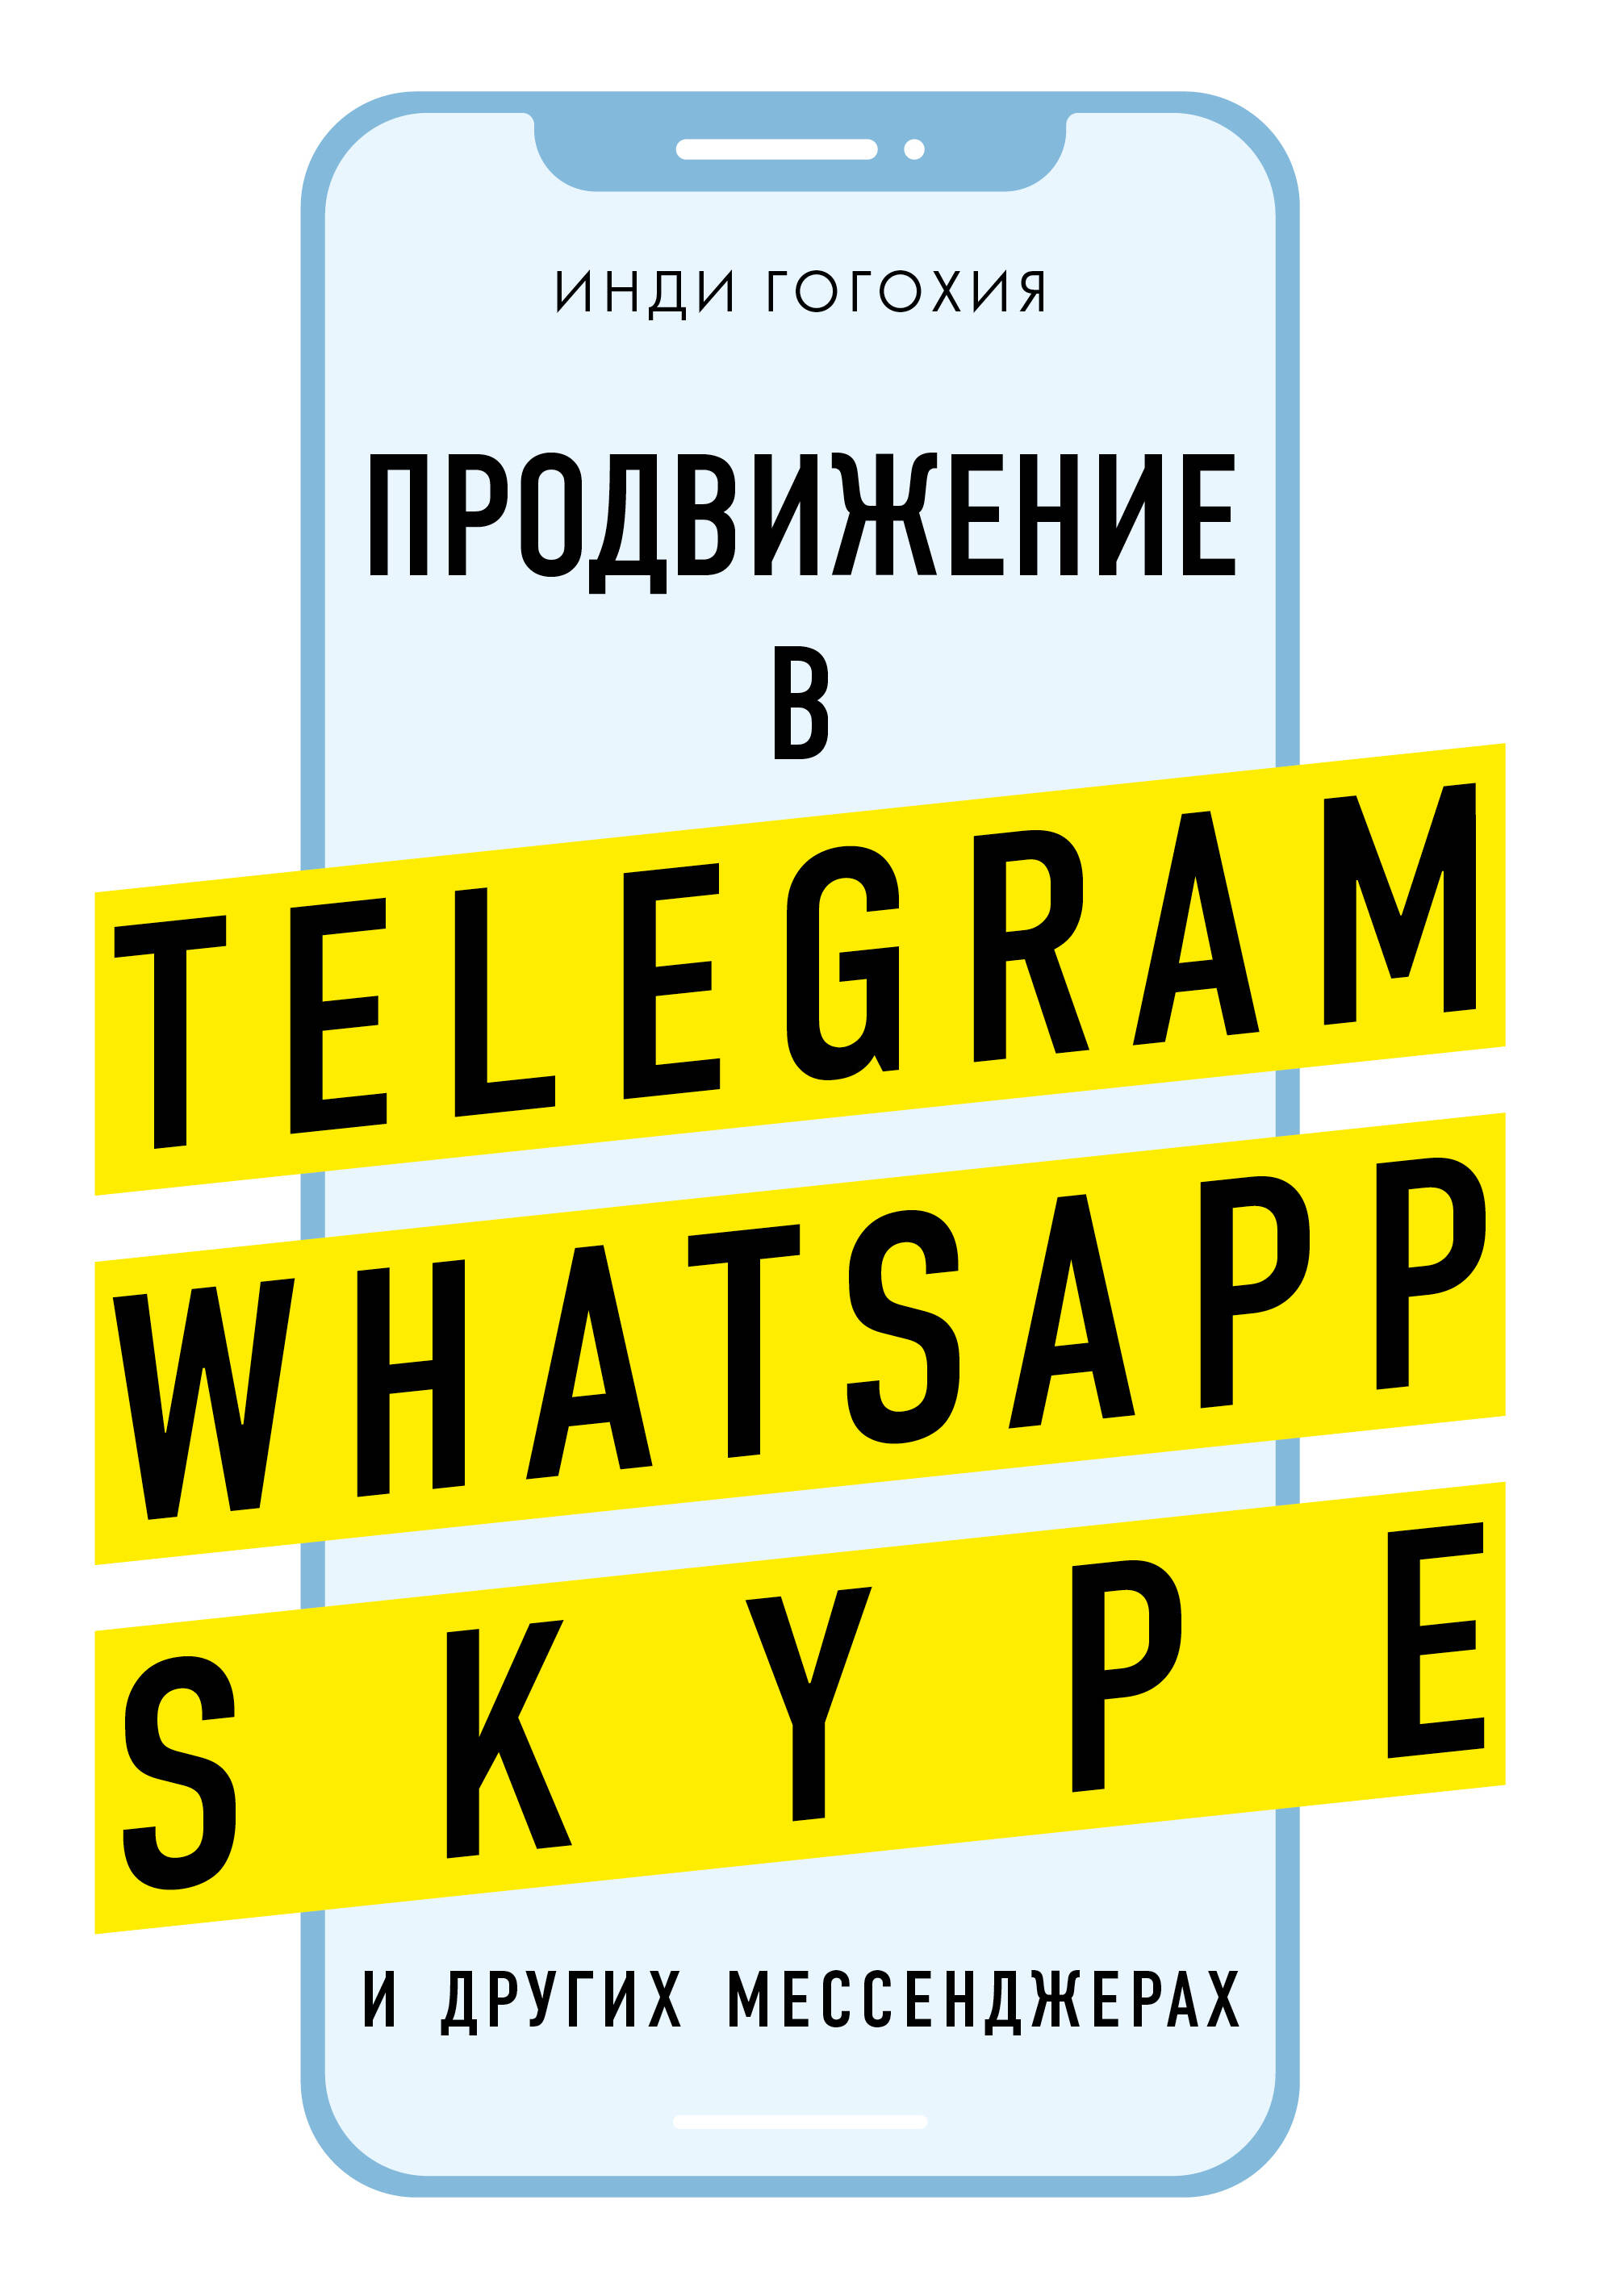 Гогохия Инди Добавь клиента в друзья. Продвижение в Telegram, WhatsApp, Skype и других мессенджерах